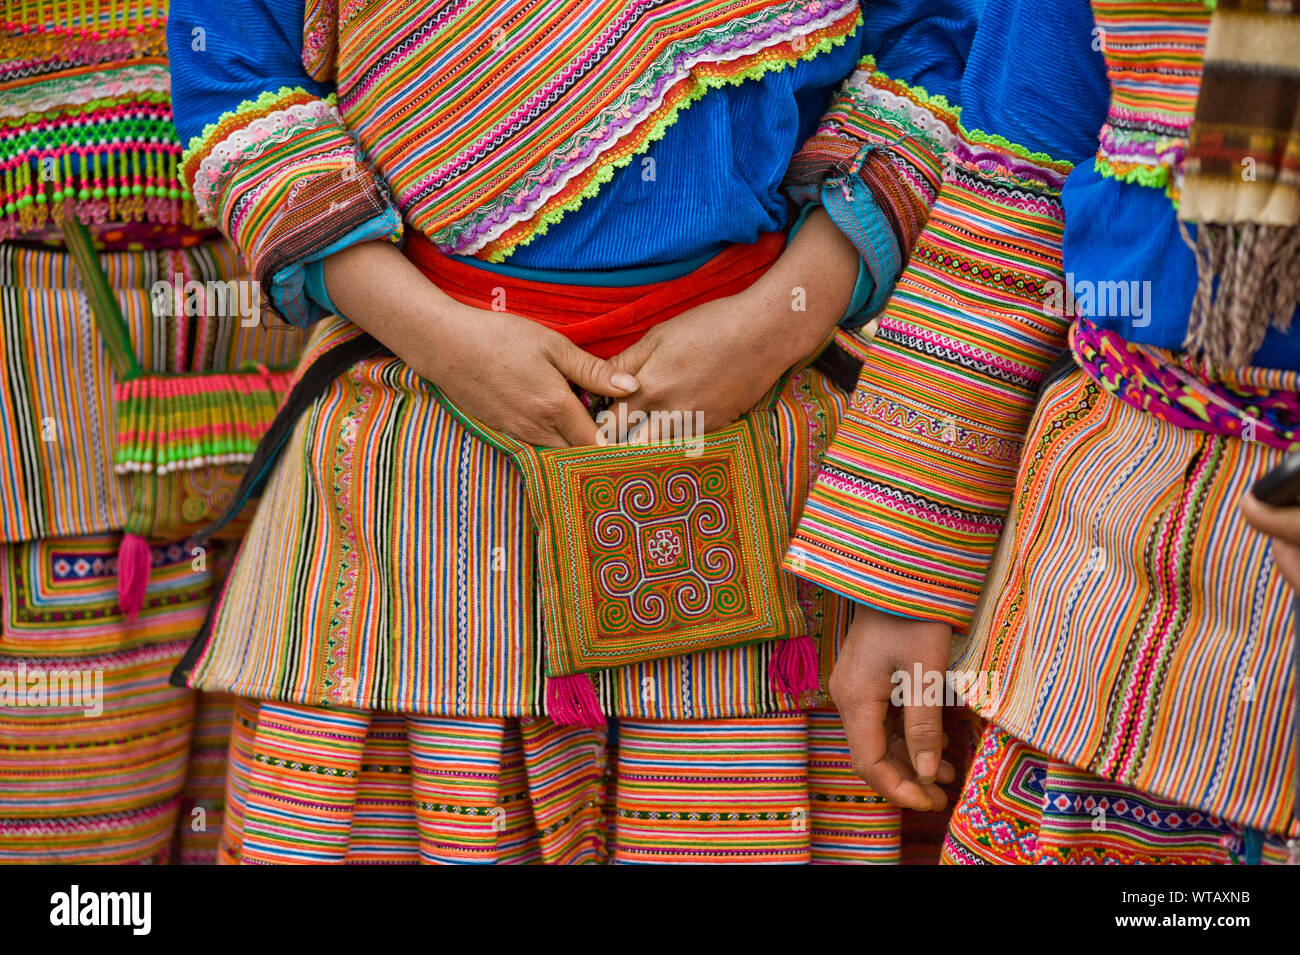 Un groupe de filles Hmong en robes brodées traditionnelles colorées Banque D'Images